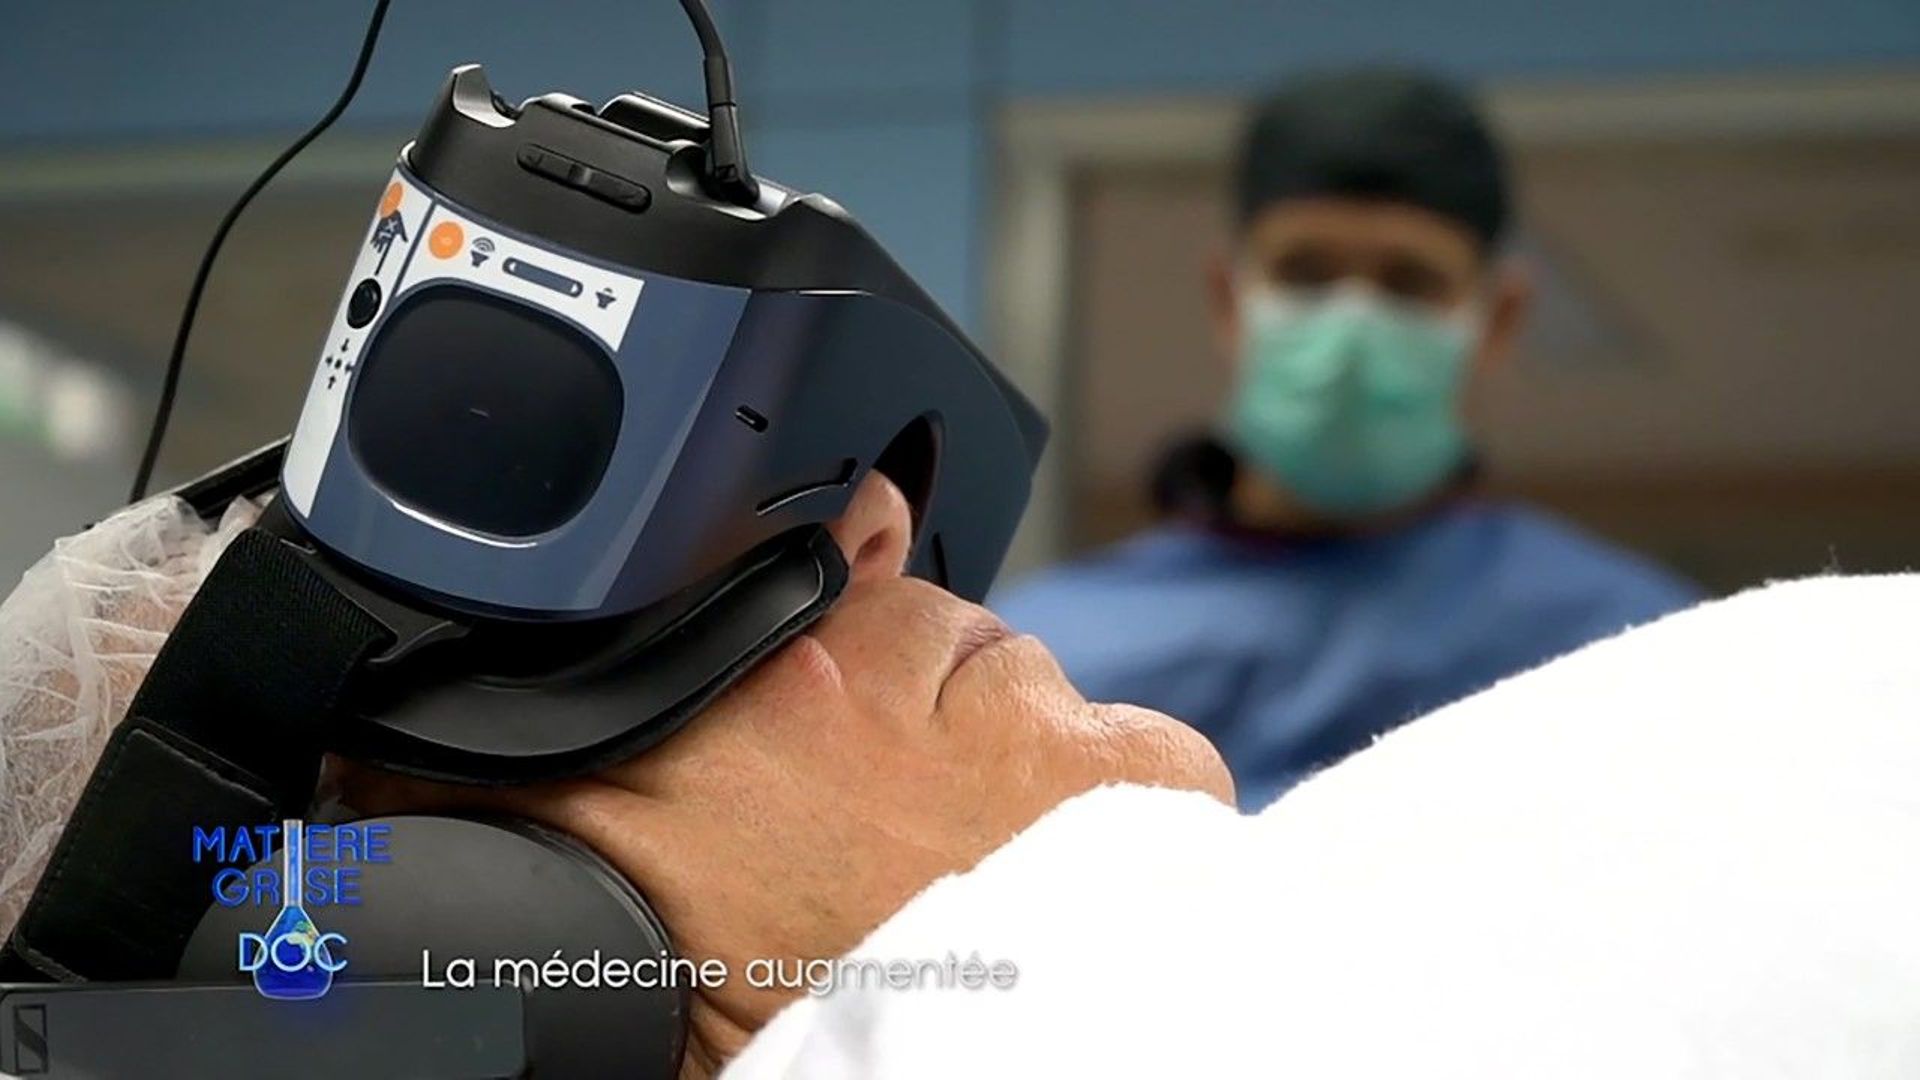 Un patient opéré du cœur expérimente l'hypnose avec un casque de réalité virtuelle